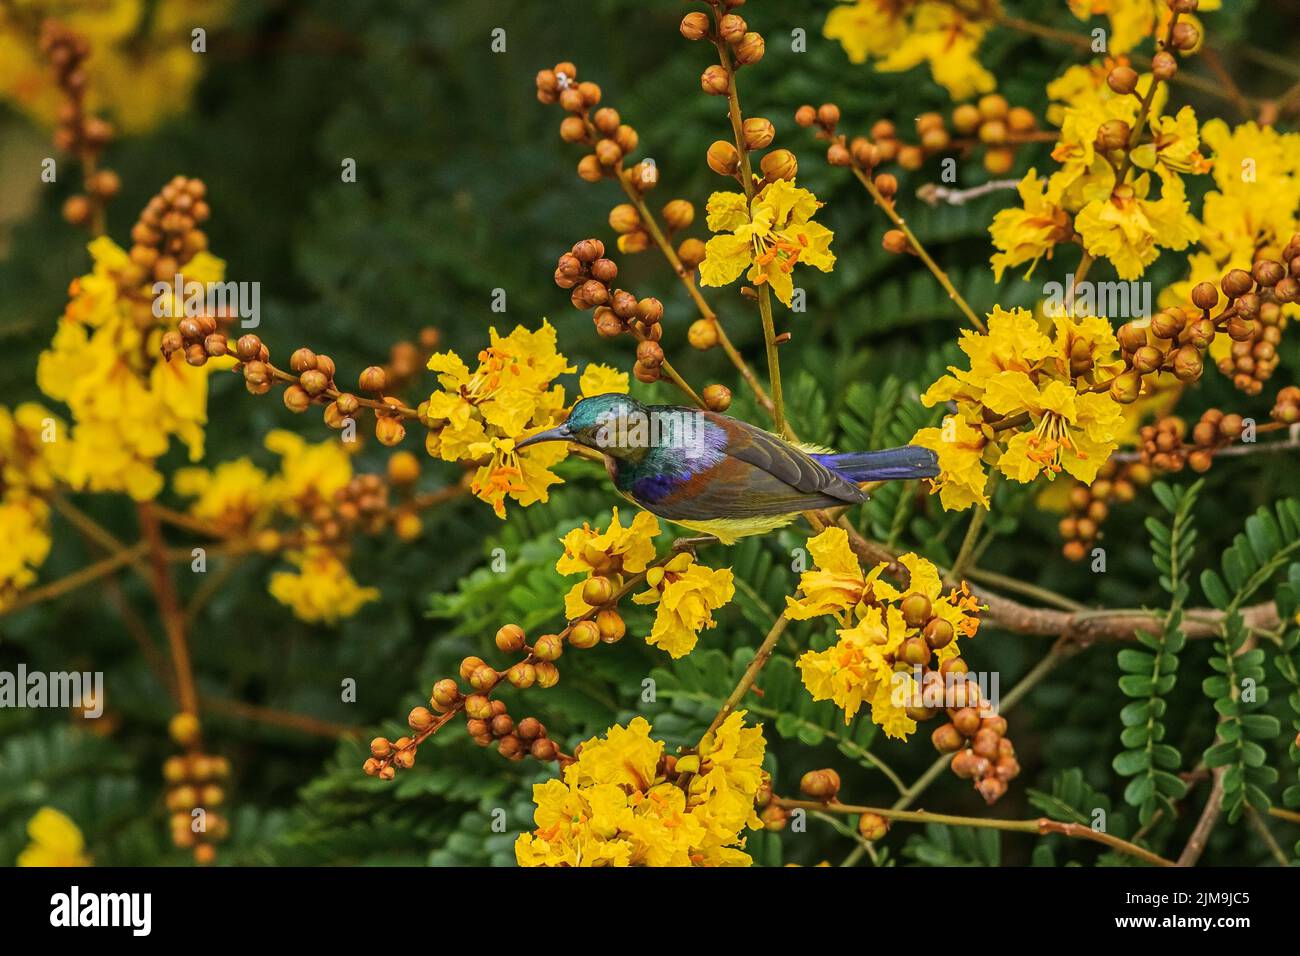 Ein Sonnenvögel mit Olivenrücken staut sich unter den gelben Blüten der Gelben Flametere in Malaysia. Stockfoto